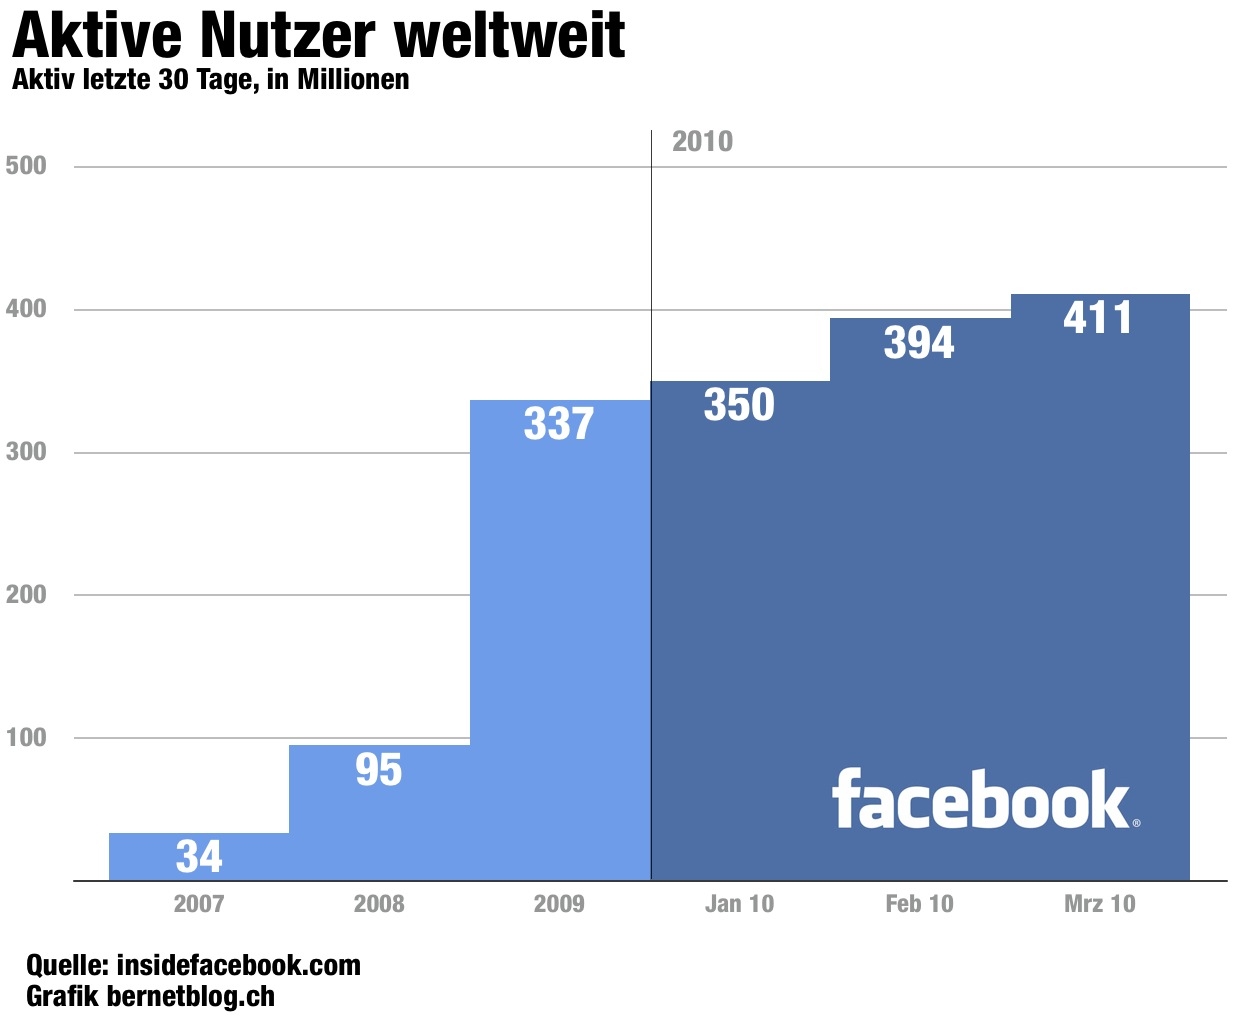 Wie viele mitglieder hat facebook weltweit